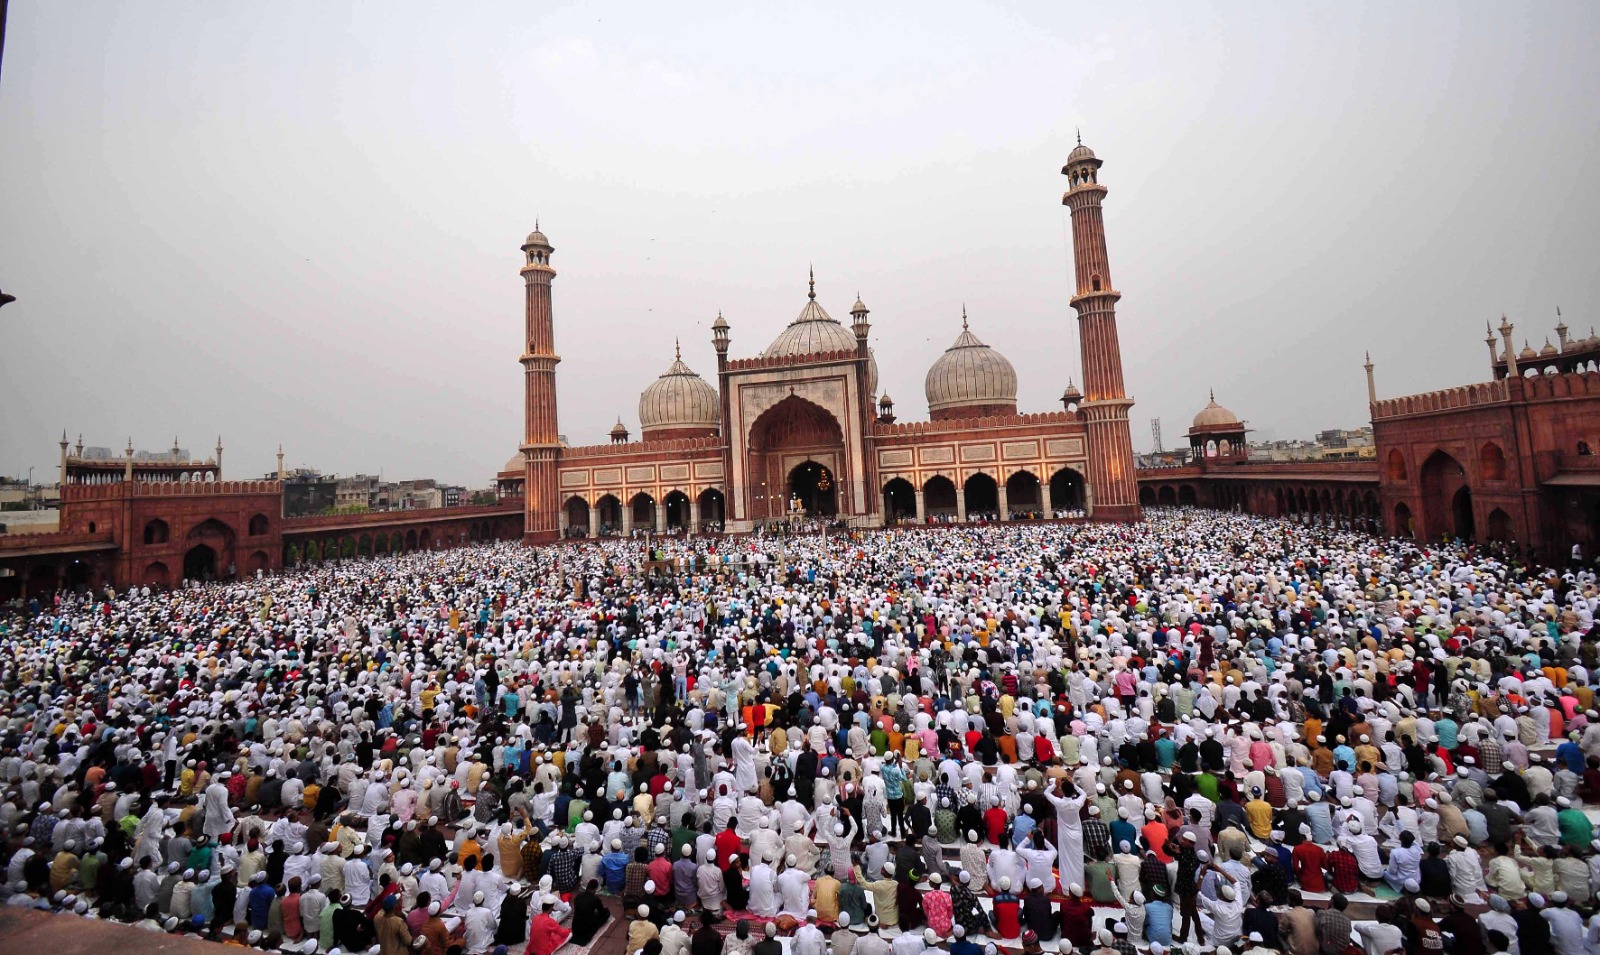 ملک بھر میں پوری عقیدت کے ساتھ ادا کی گئی نماز عید الفطر، امن اور خوش حالی کے لیے خصوصی دعائیں